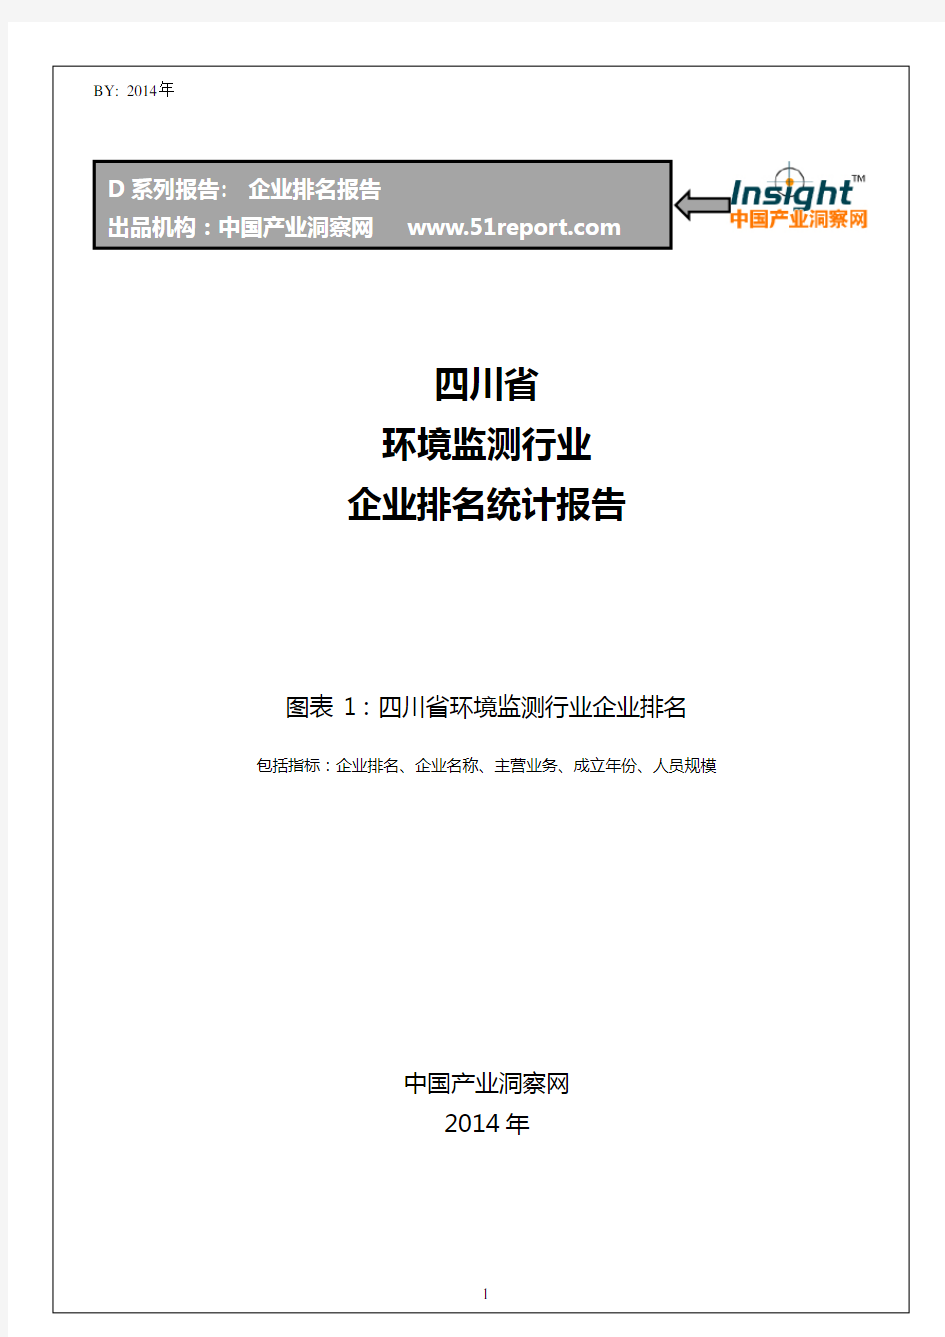 四川省环境监测行业企业排名统计报告